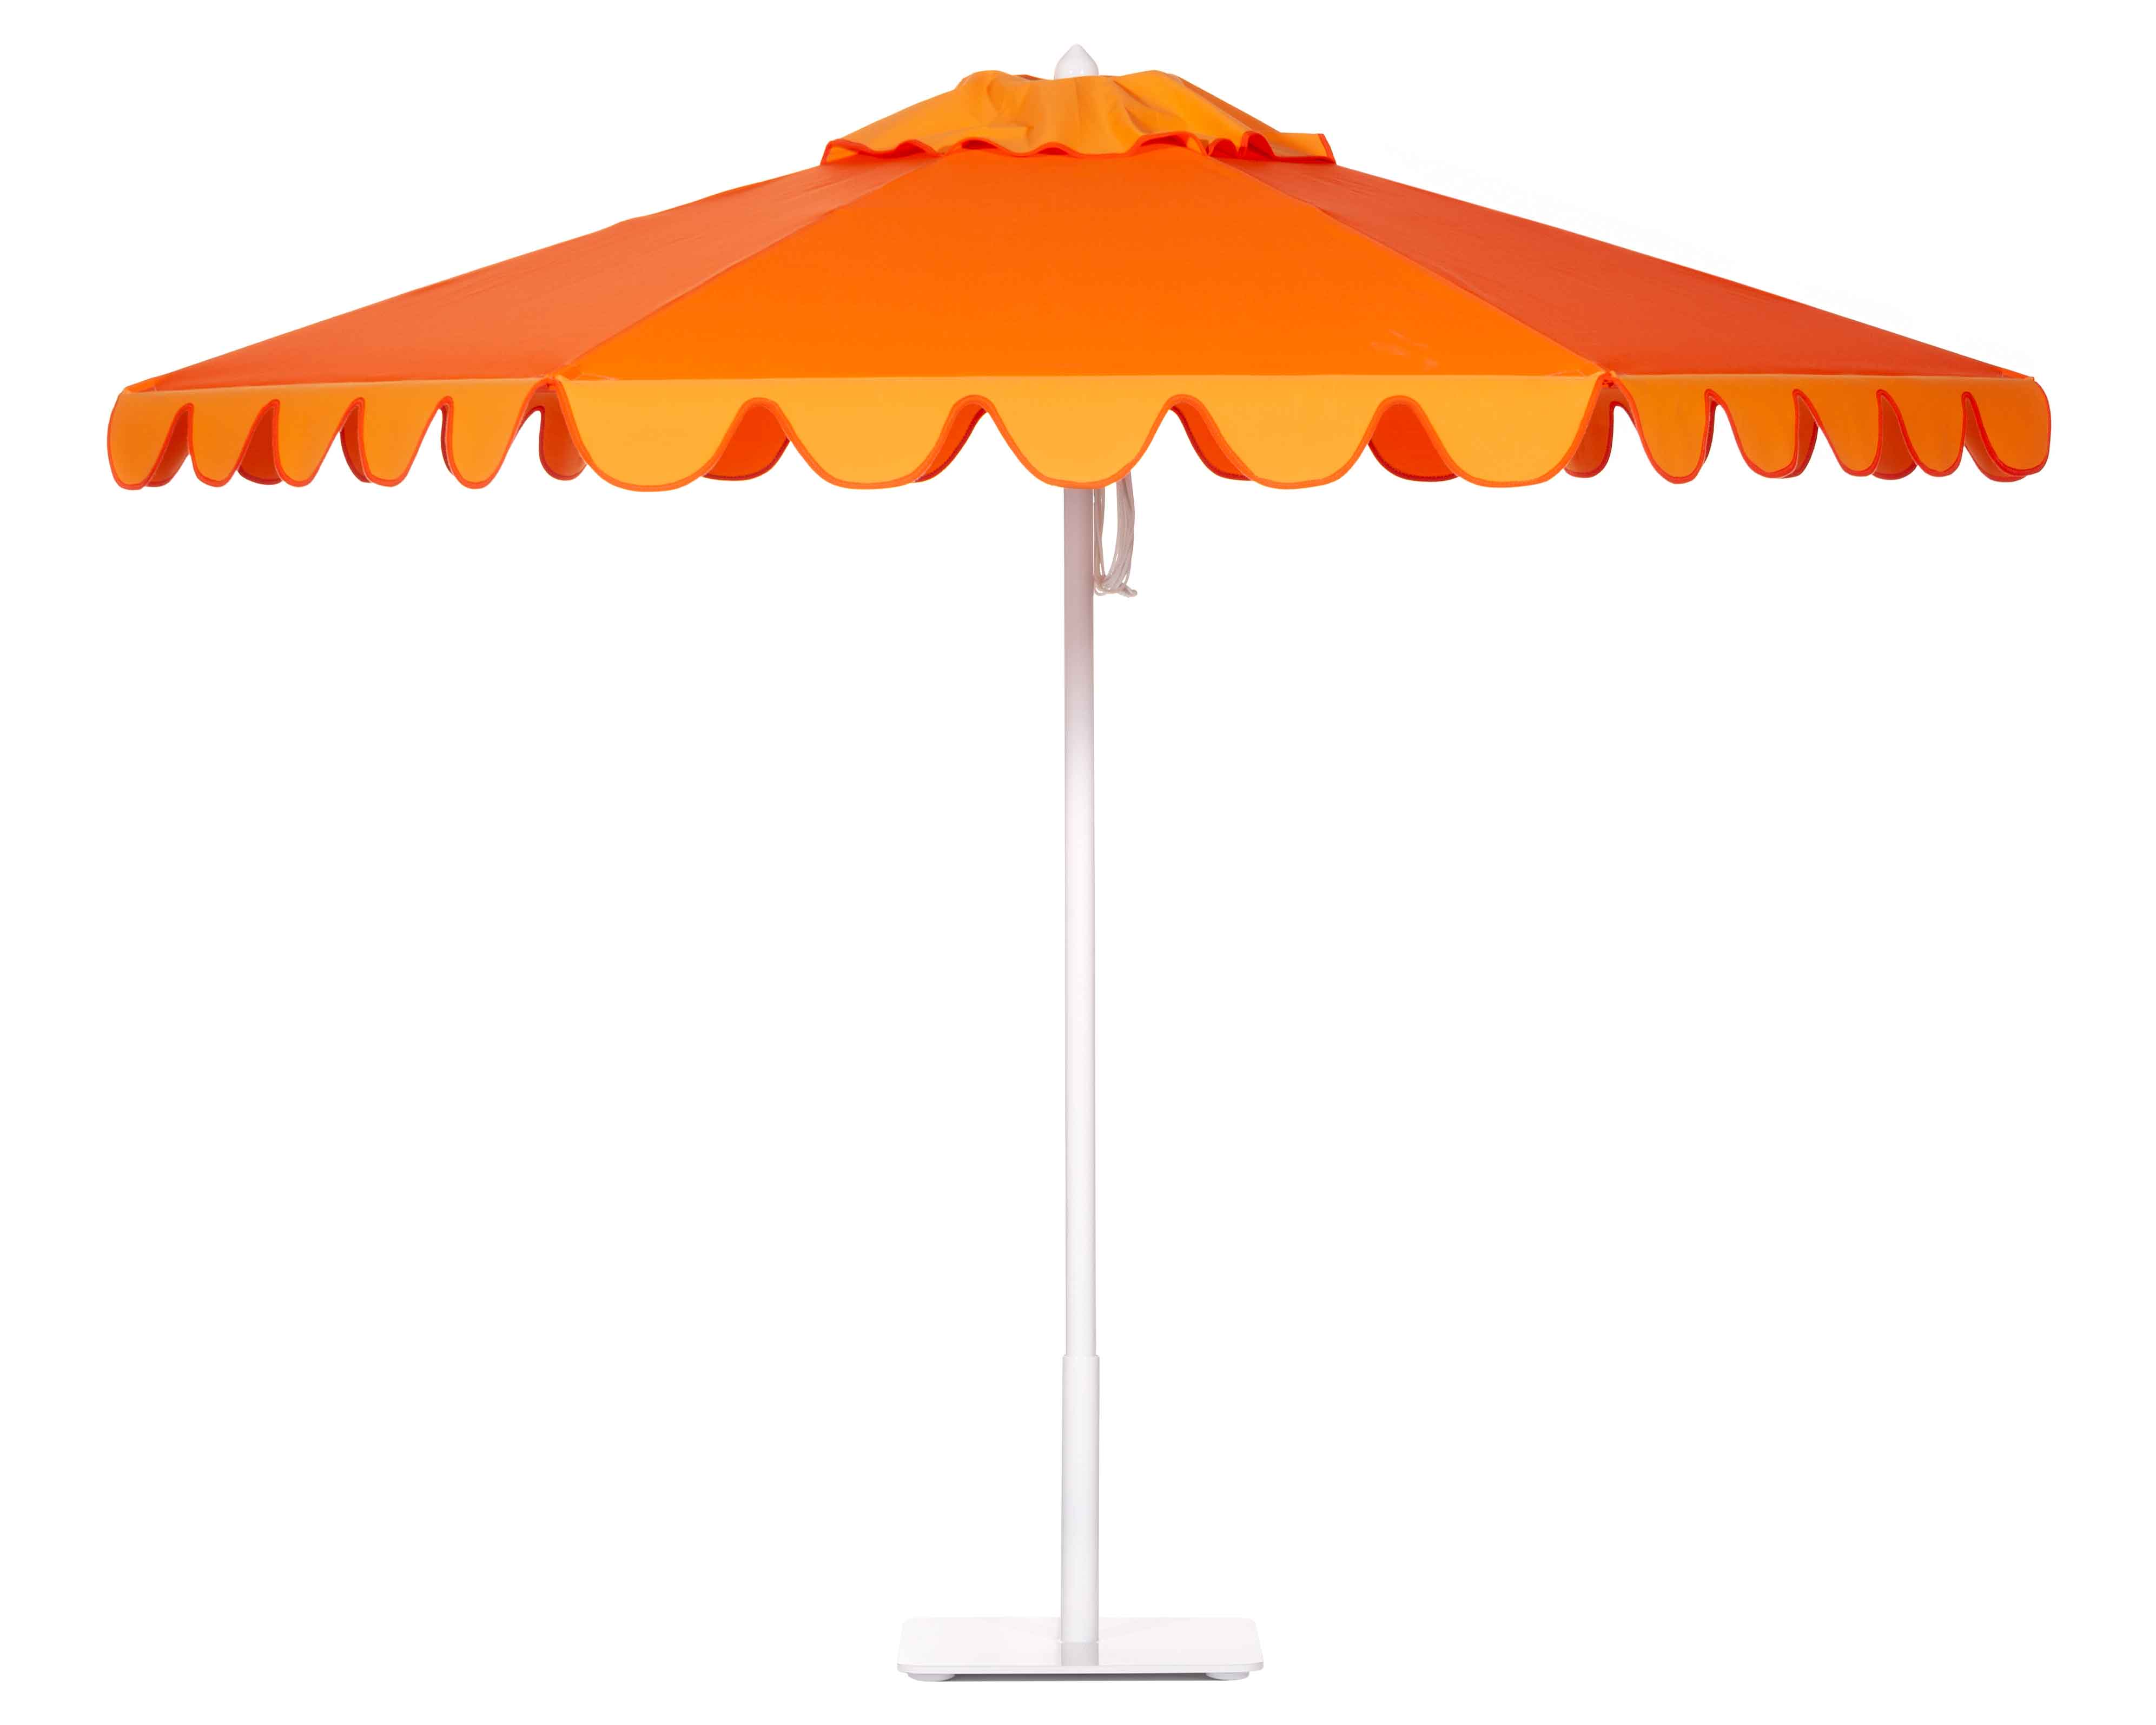 Mandarin Orange and Tango Orange umbrella Image